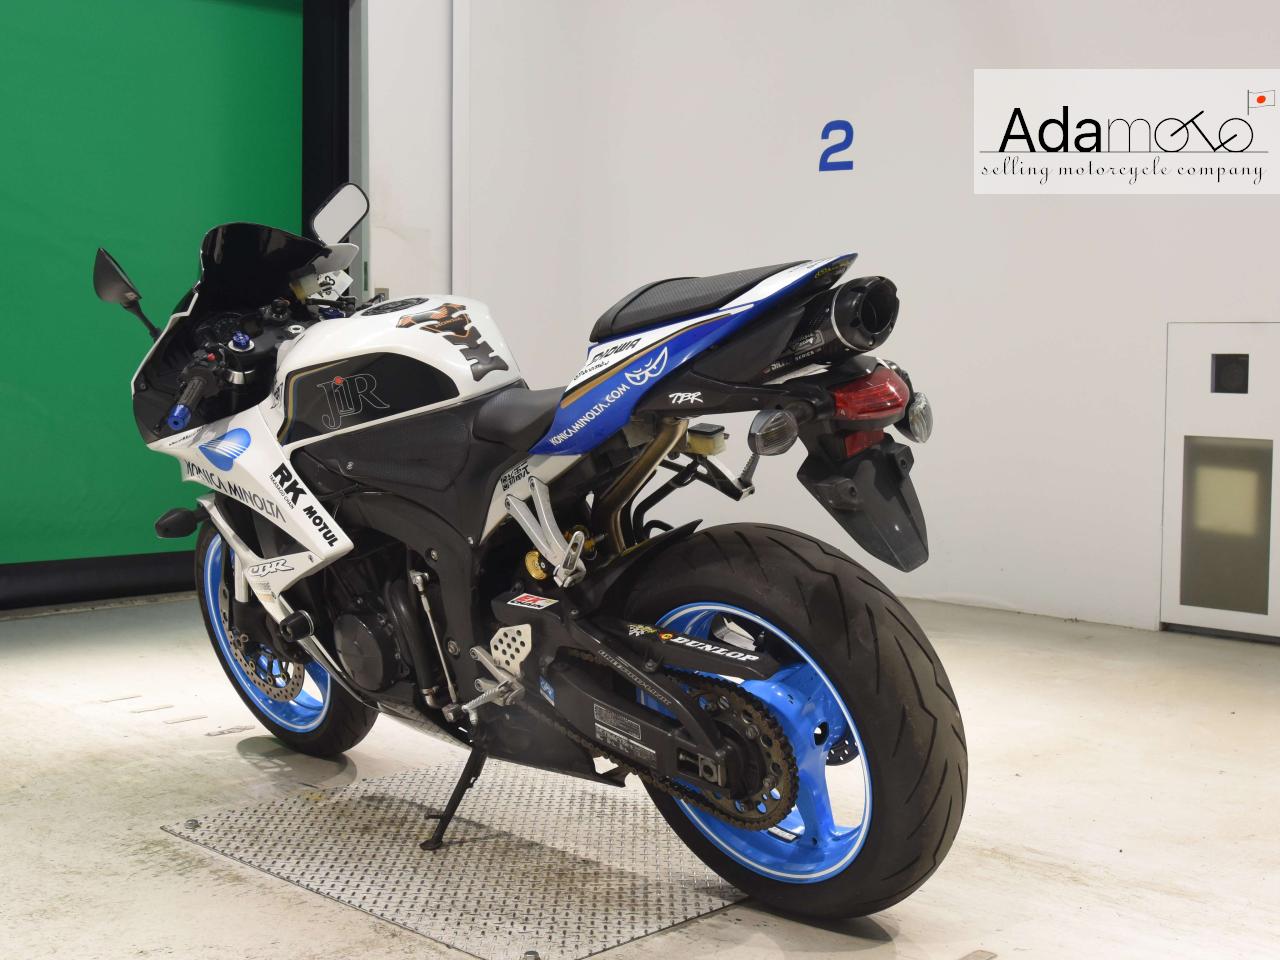 Honda CBR600RR 3 - Adamoto - Motorcycles from Japan